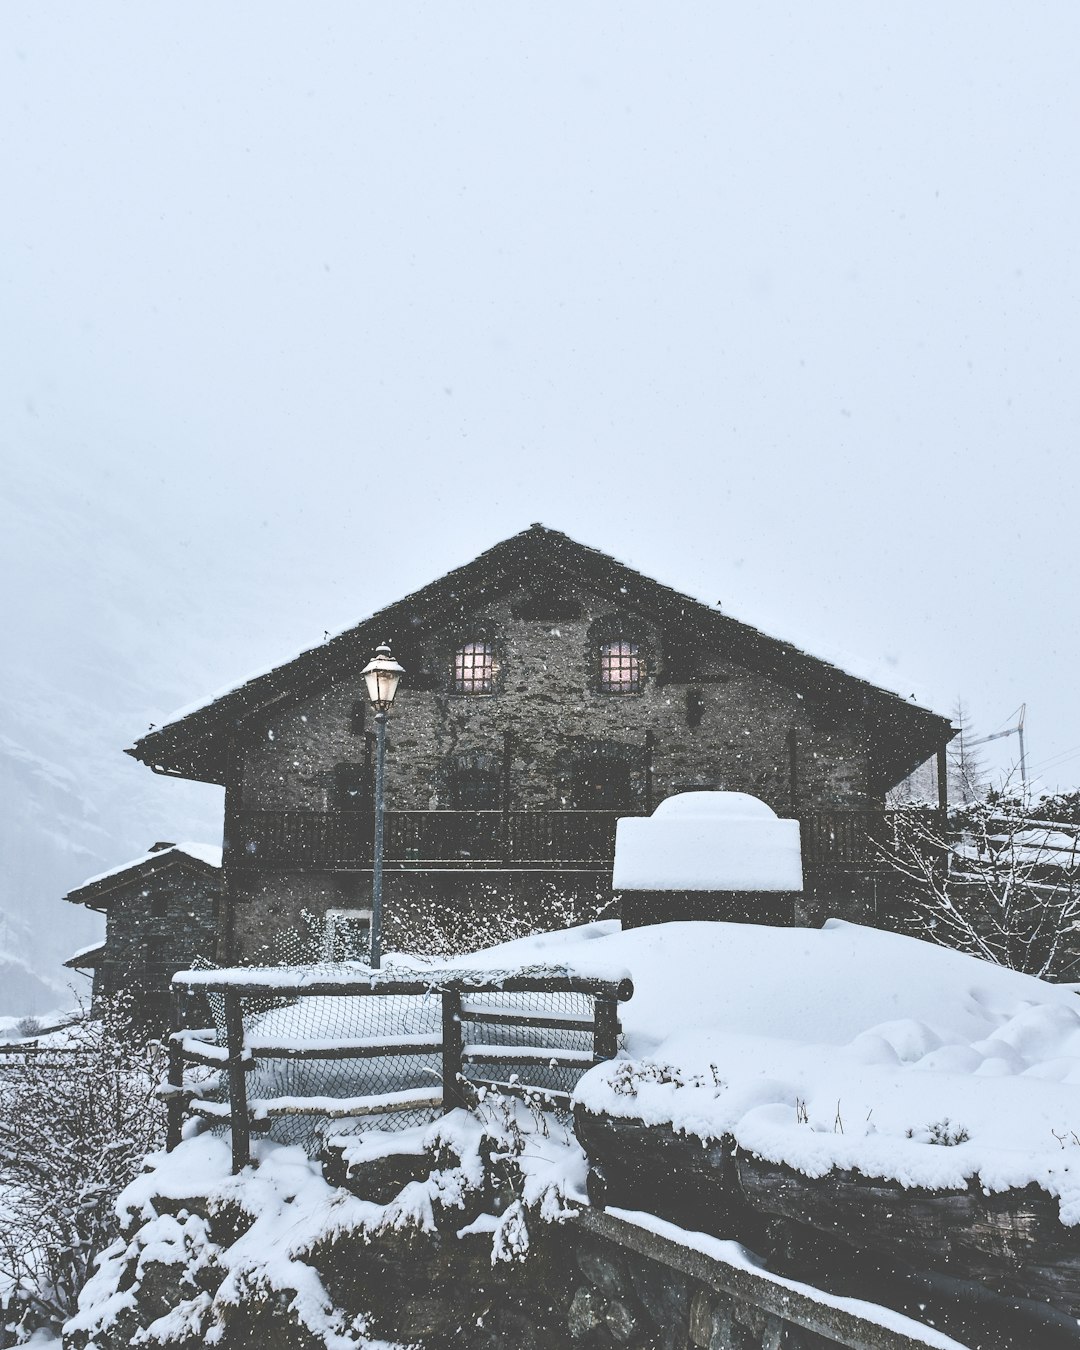 Hill station photo spot Valgrisenche Aosta